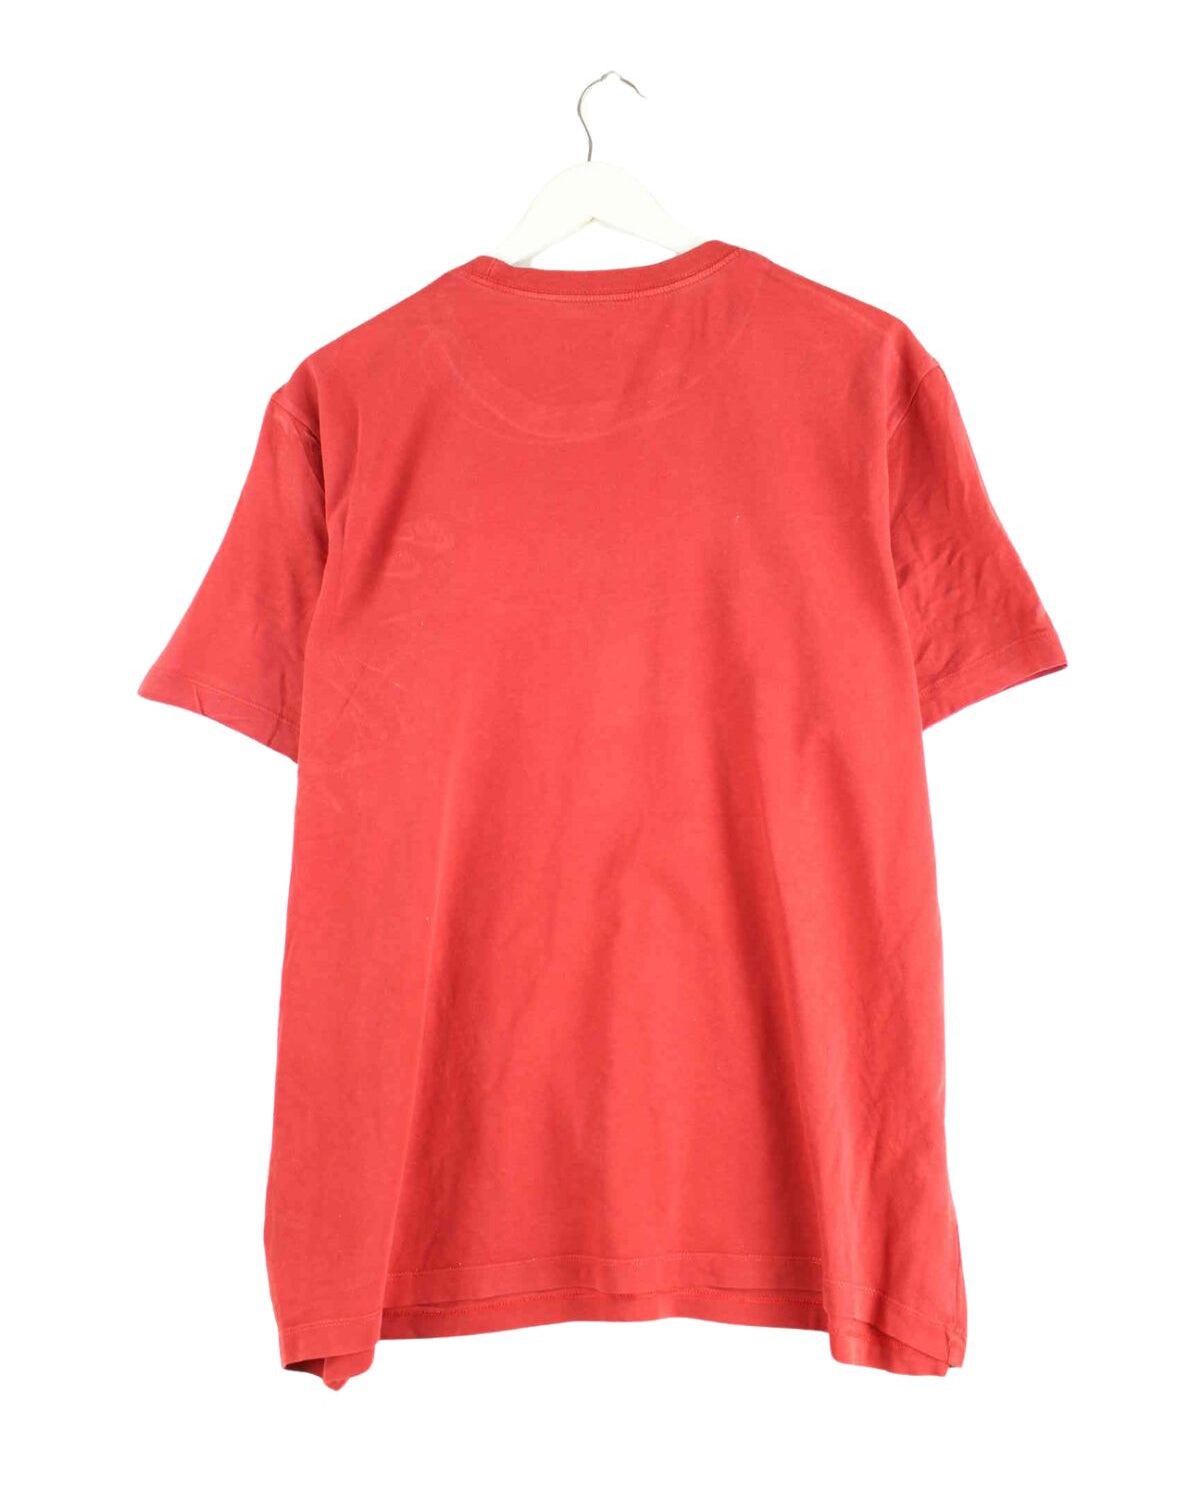 Nike Basic T-Shirt Rot XL (back image)